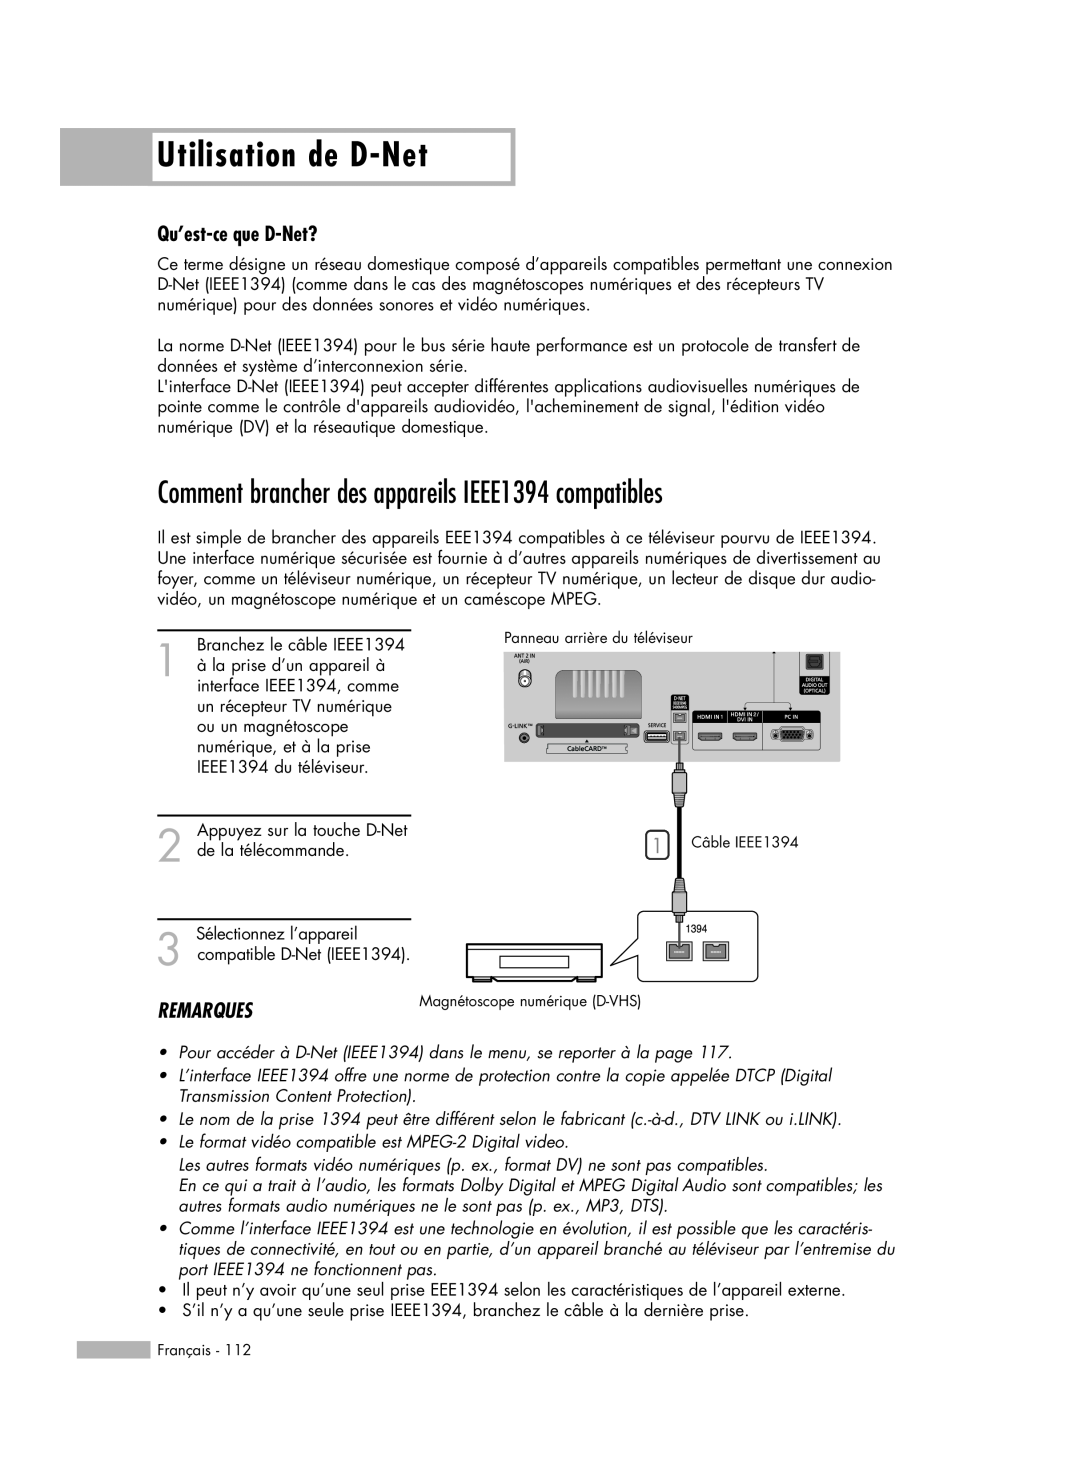 Samsung HL-R6178W manual Utilisation de D-Net, Comment brancher des appareils IEEE1394 compatibles, Qu’est-ce que D-Net? 